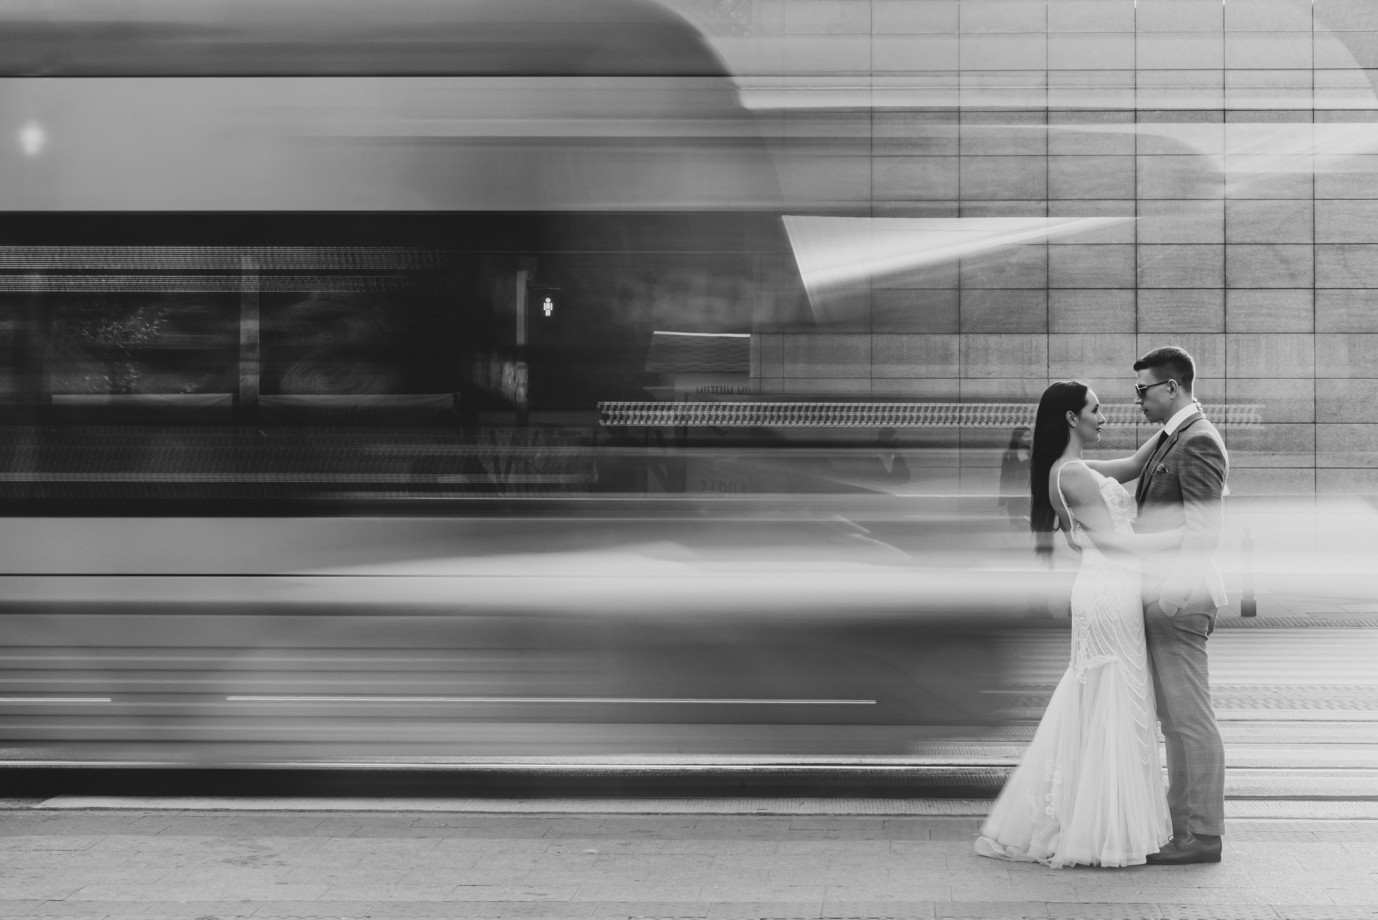 zdjęcia lodz fotograf fotografia-michal-blaszczyk portfolio zdjecia slubne inspiracje wesele plener slubny sesja slubna